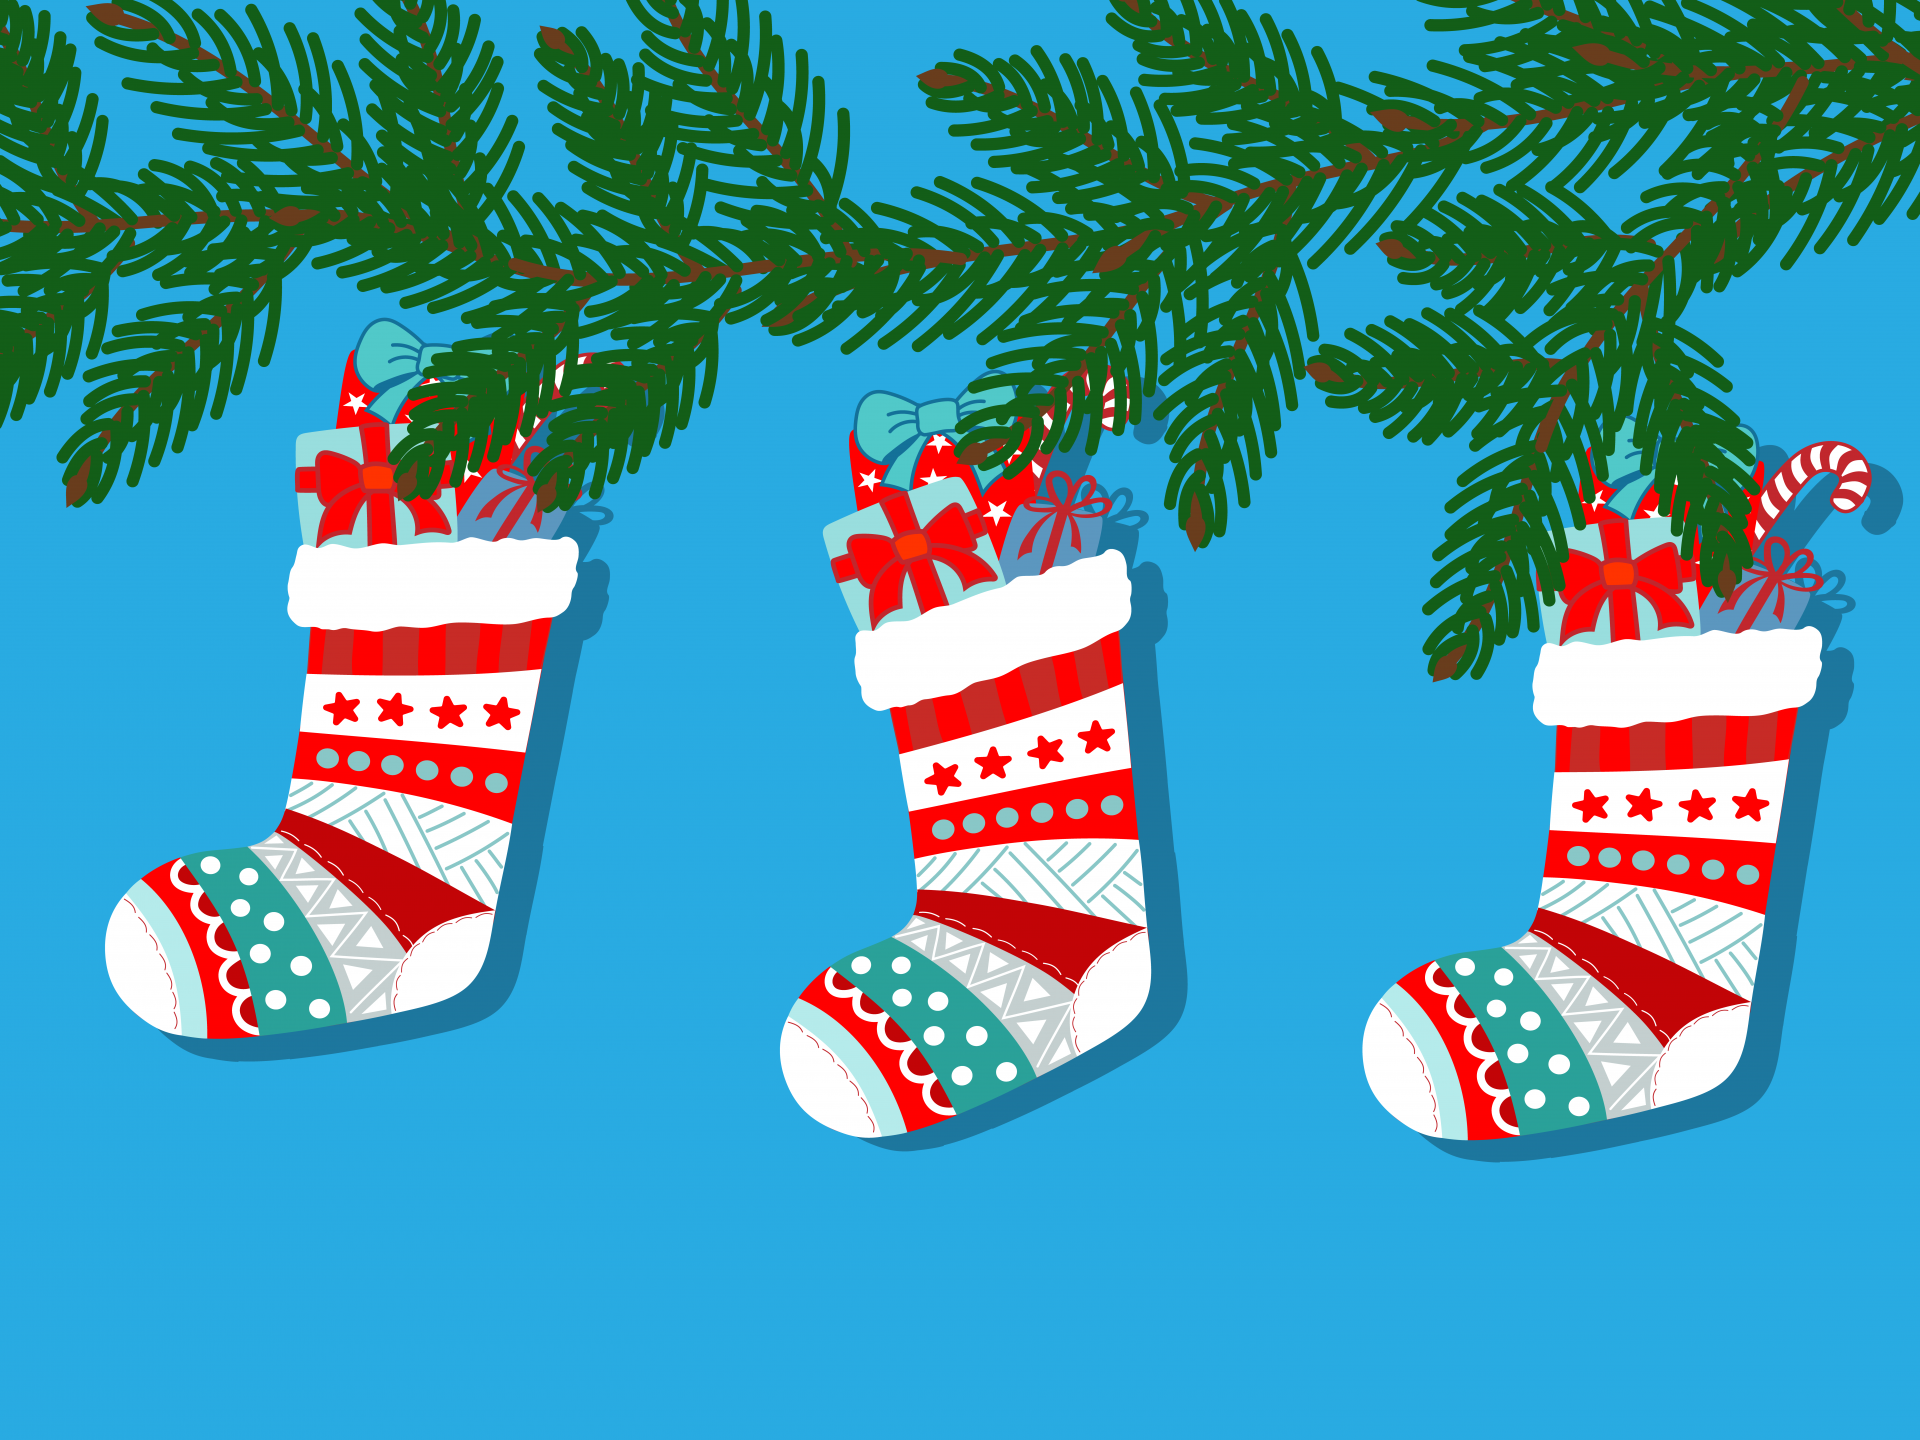 クリスマスの靴下のイラスト 無料画像 Public Domain Pictures